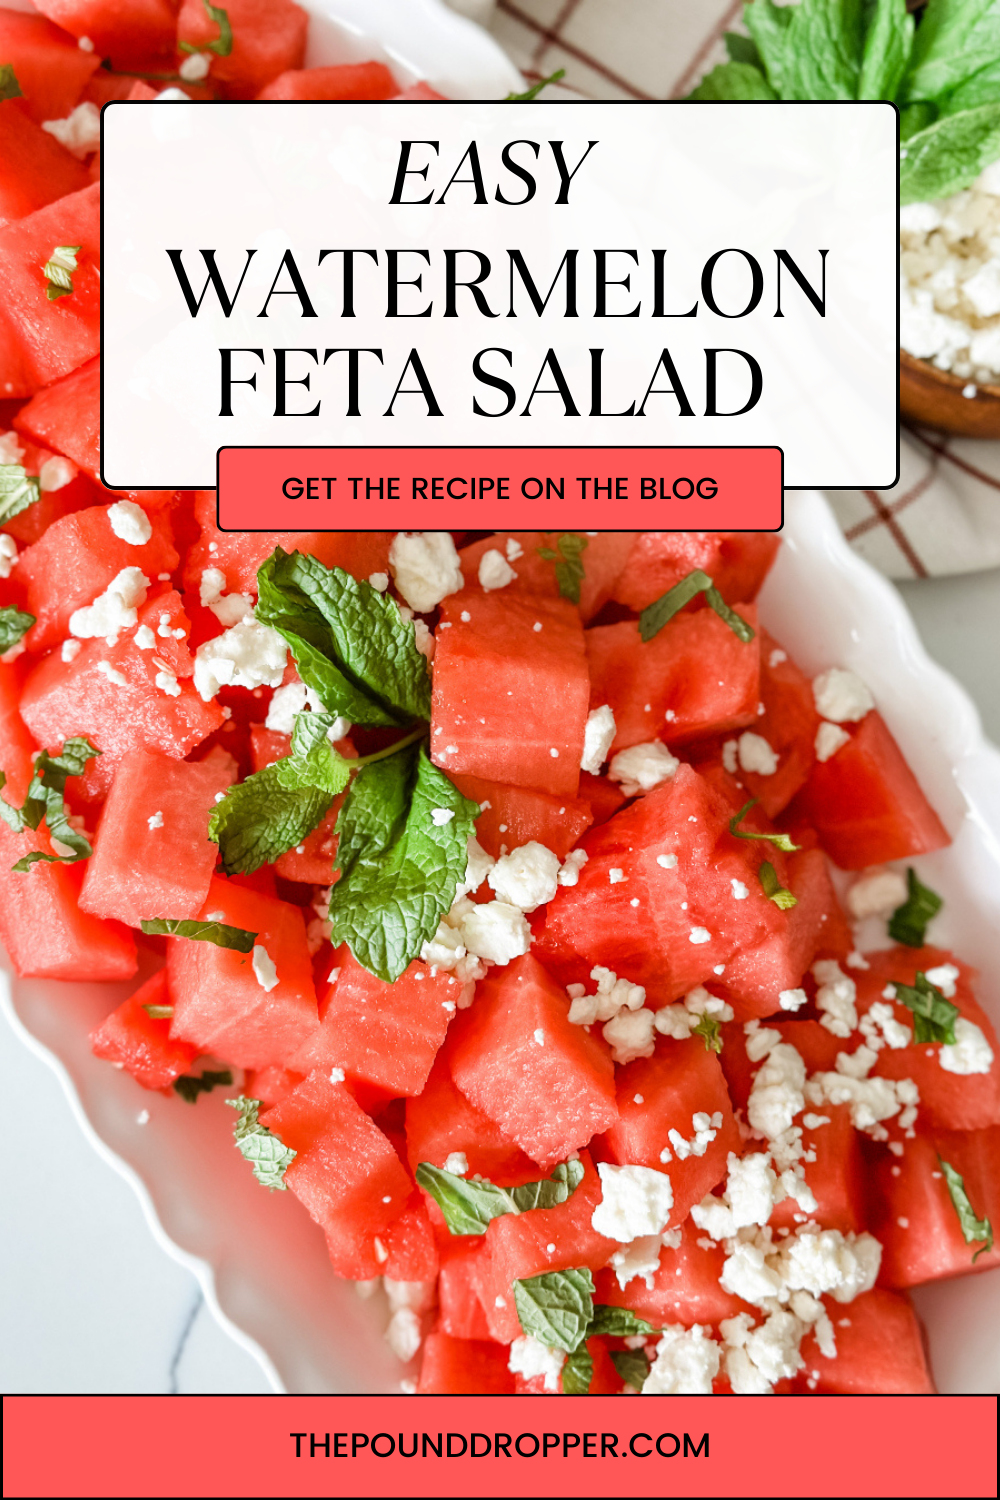 Watermelon Feta Salad via @pounddropper